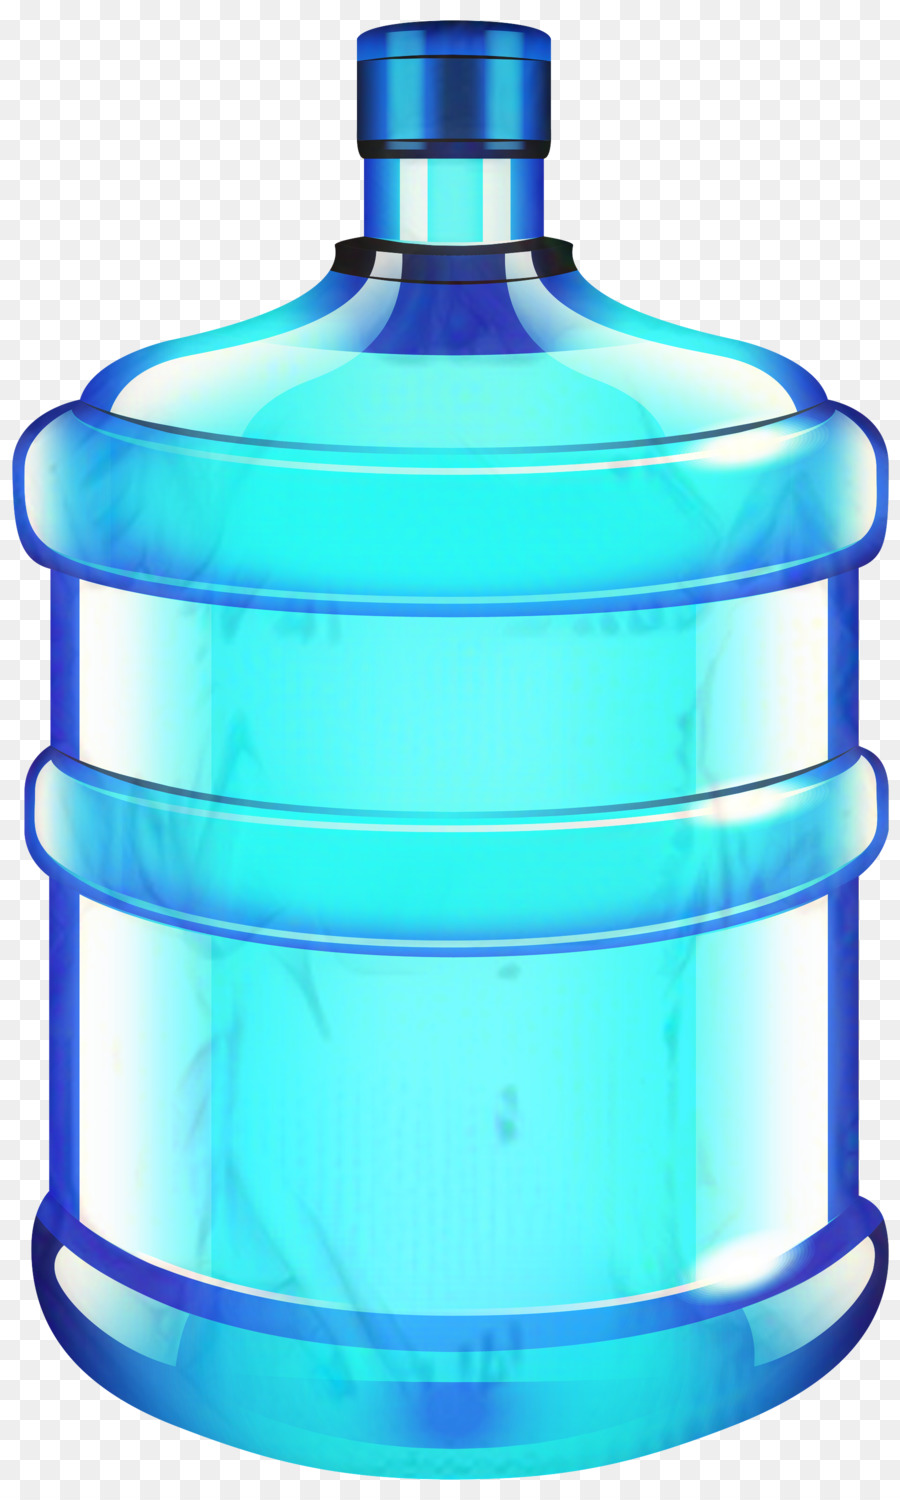 Clip art Water Bottles Bottled water -  png download - 1800*3000 - Free Transparent Bottle png Download.